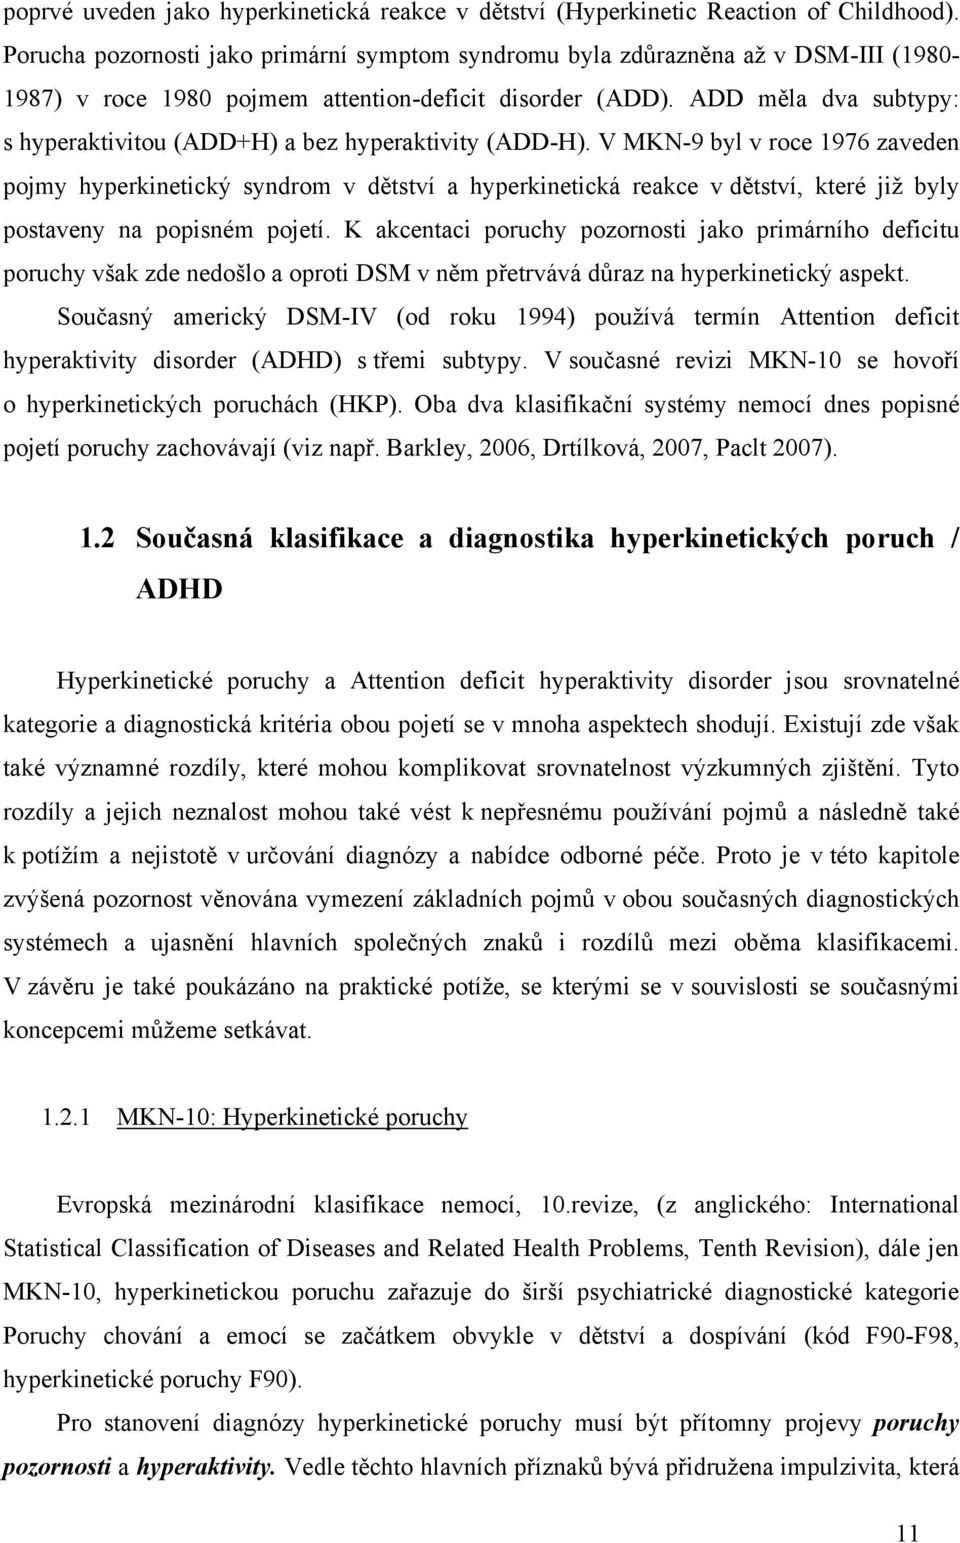 ADD měla dva subtypy: s hyperaktivitou (ADD+H) a bez hyperaktivity (ADD-H).